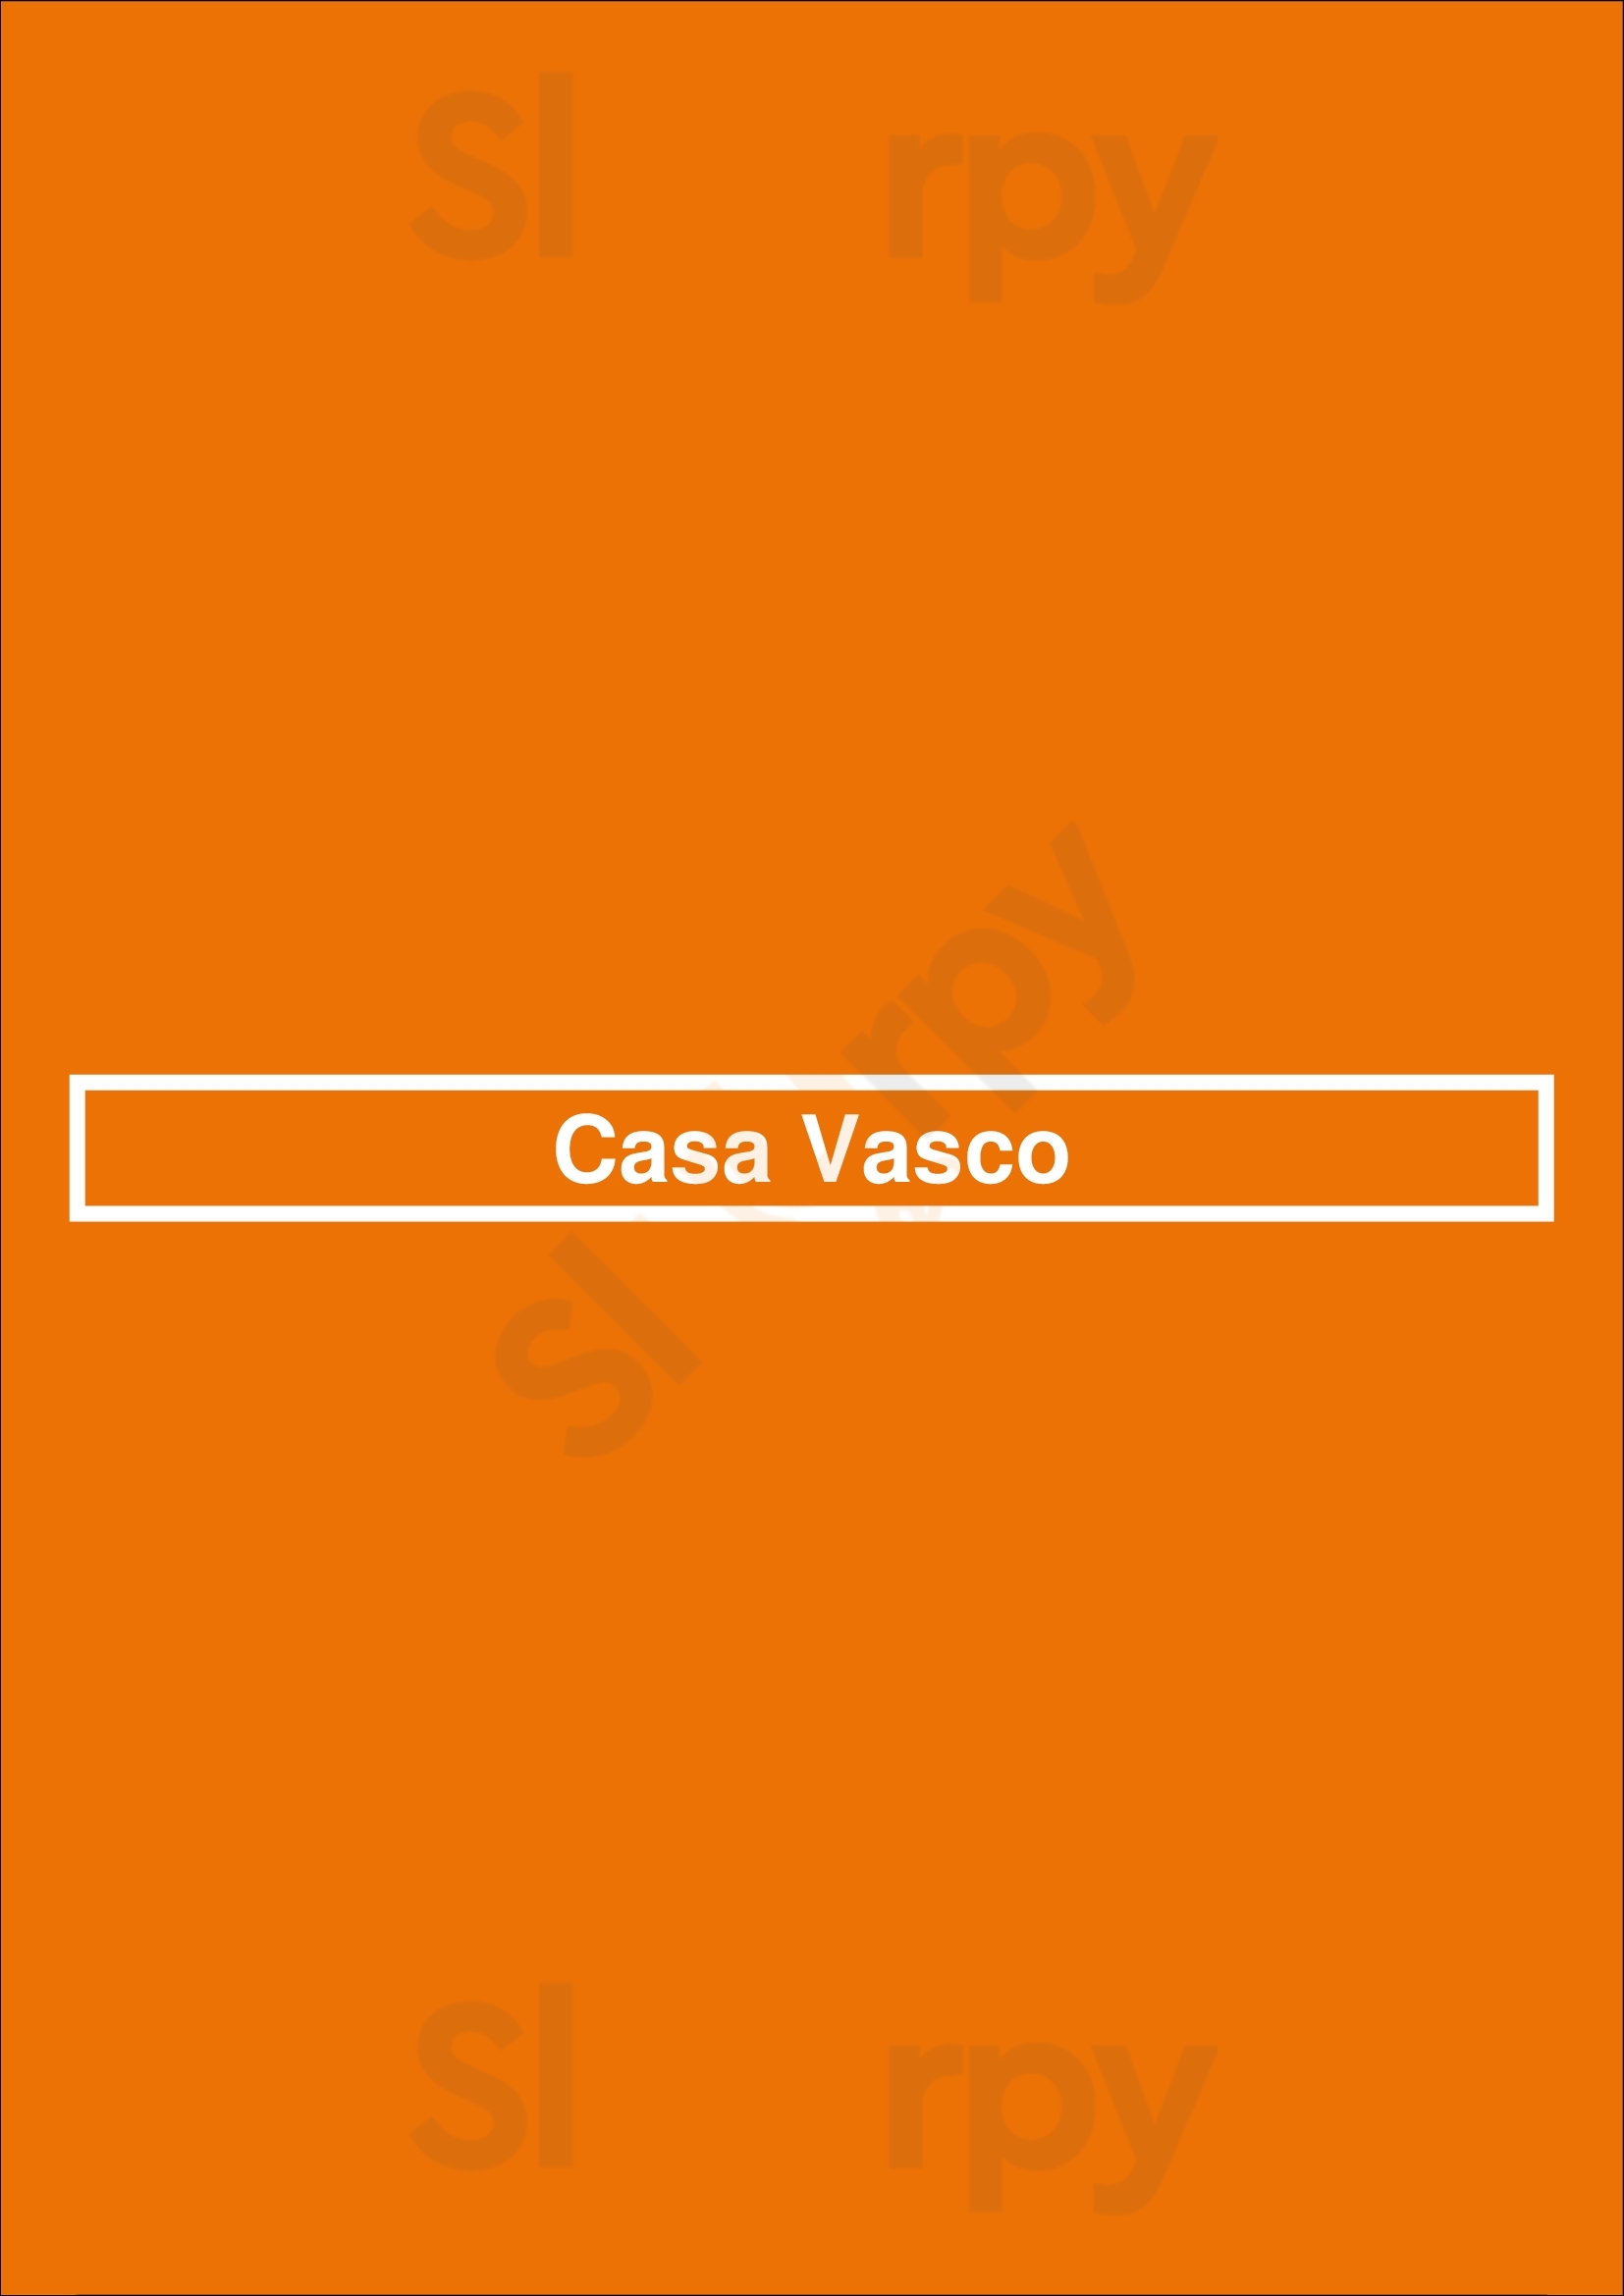 Casa Vasco Porto Menu - 1